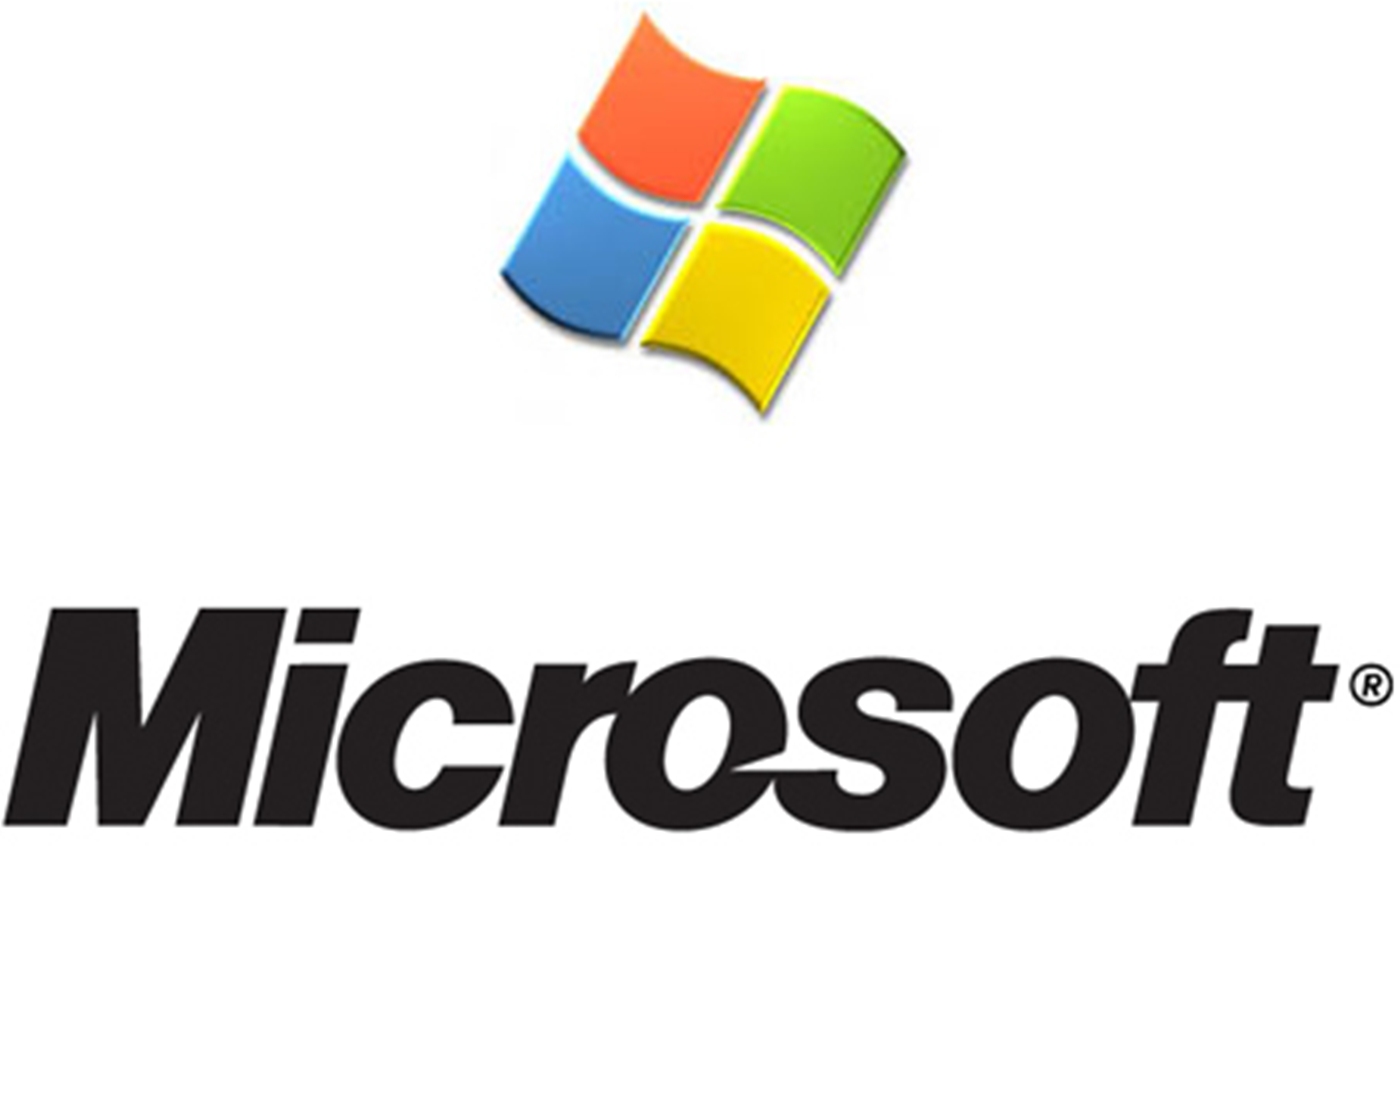 Software Company Logos